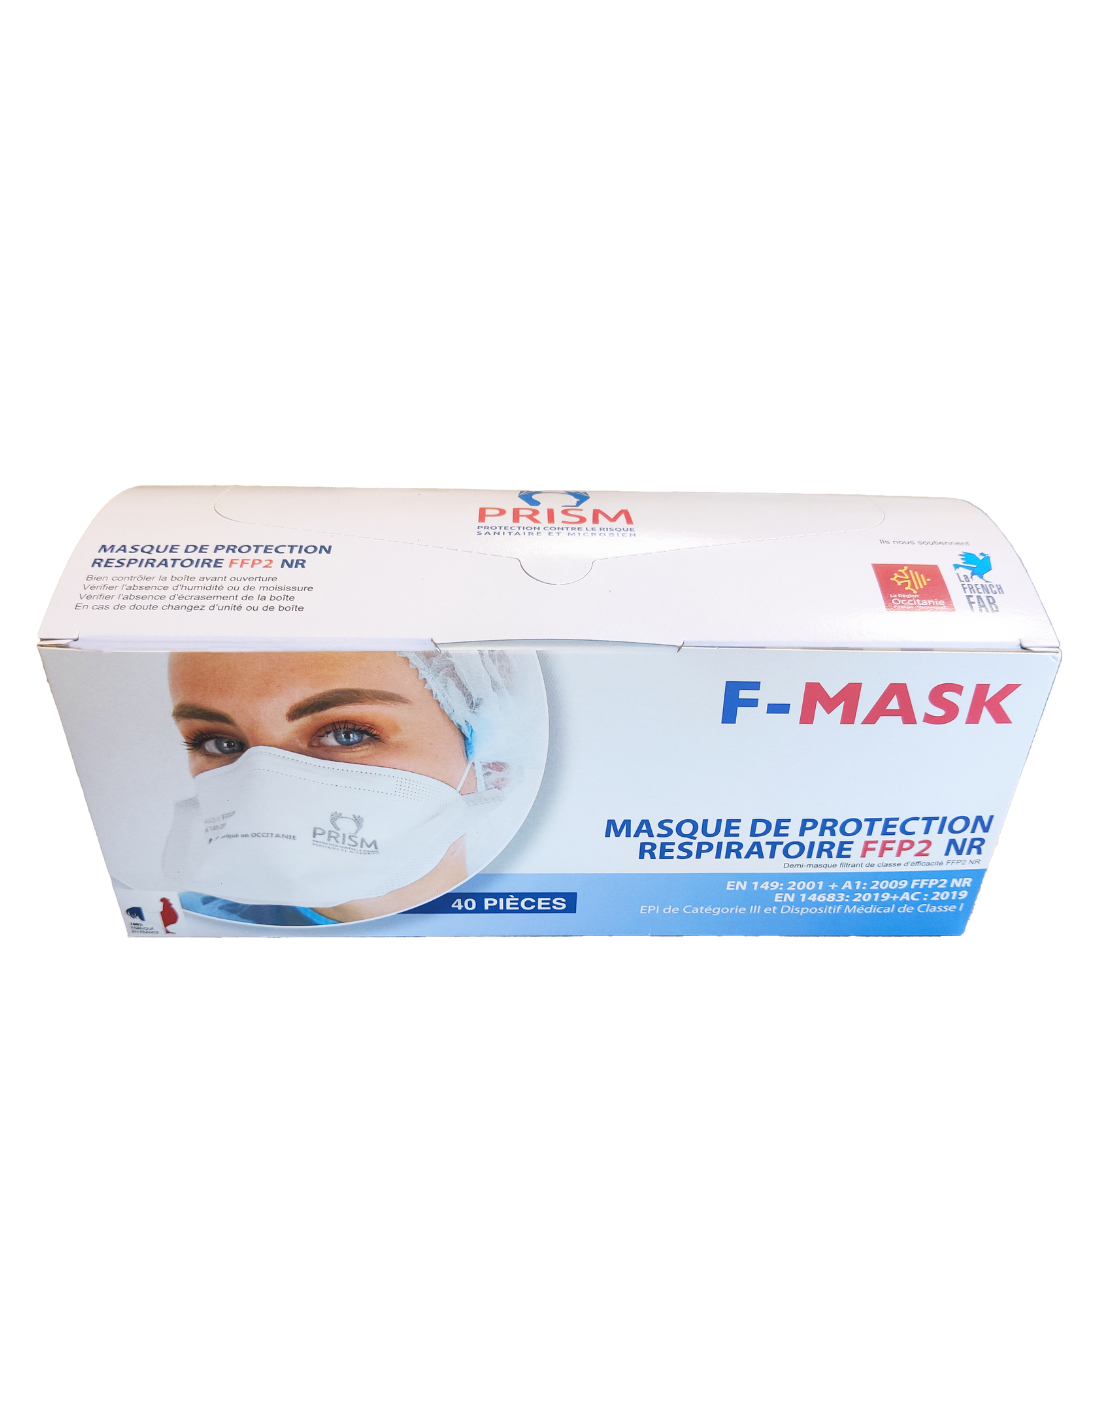 Masque FFP2 bec de canard fabriqué en France certifié EN14683